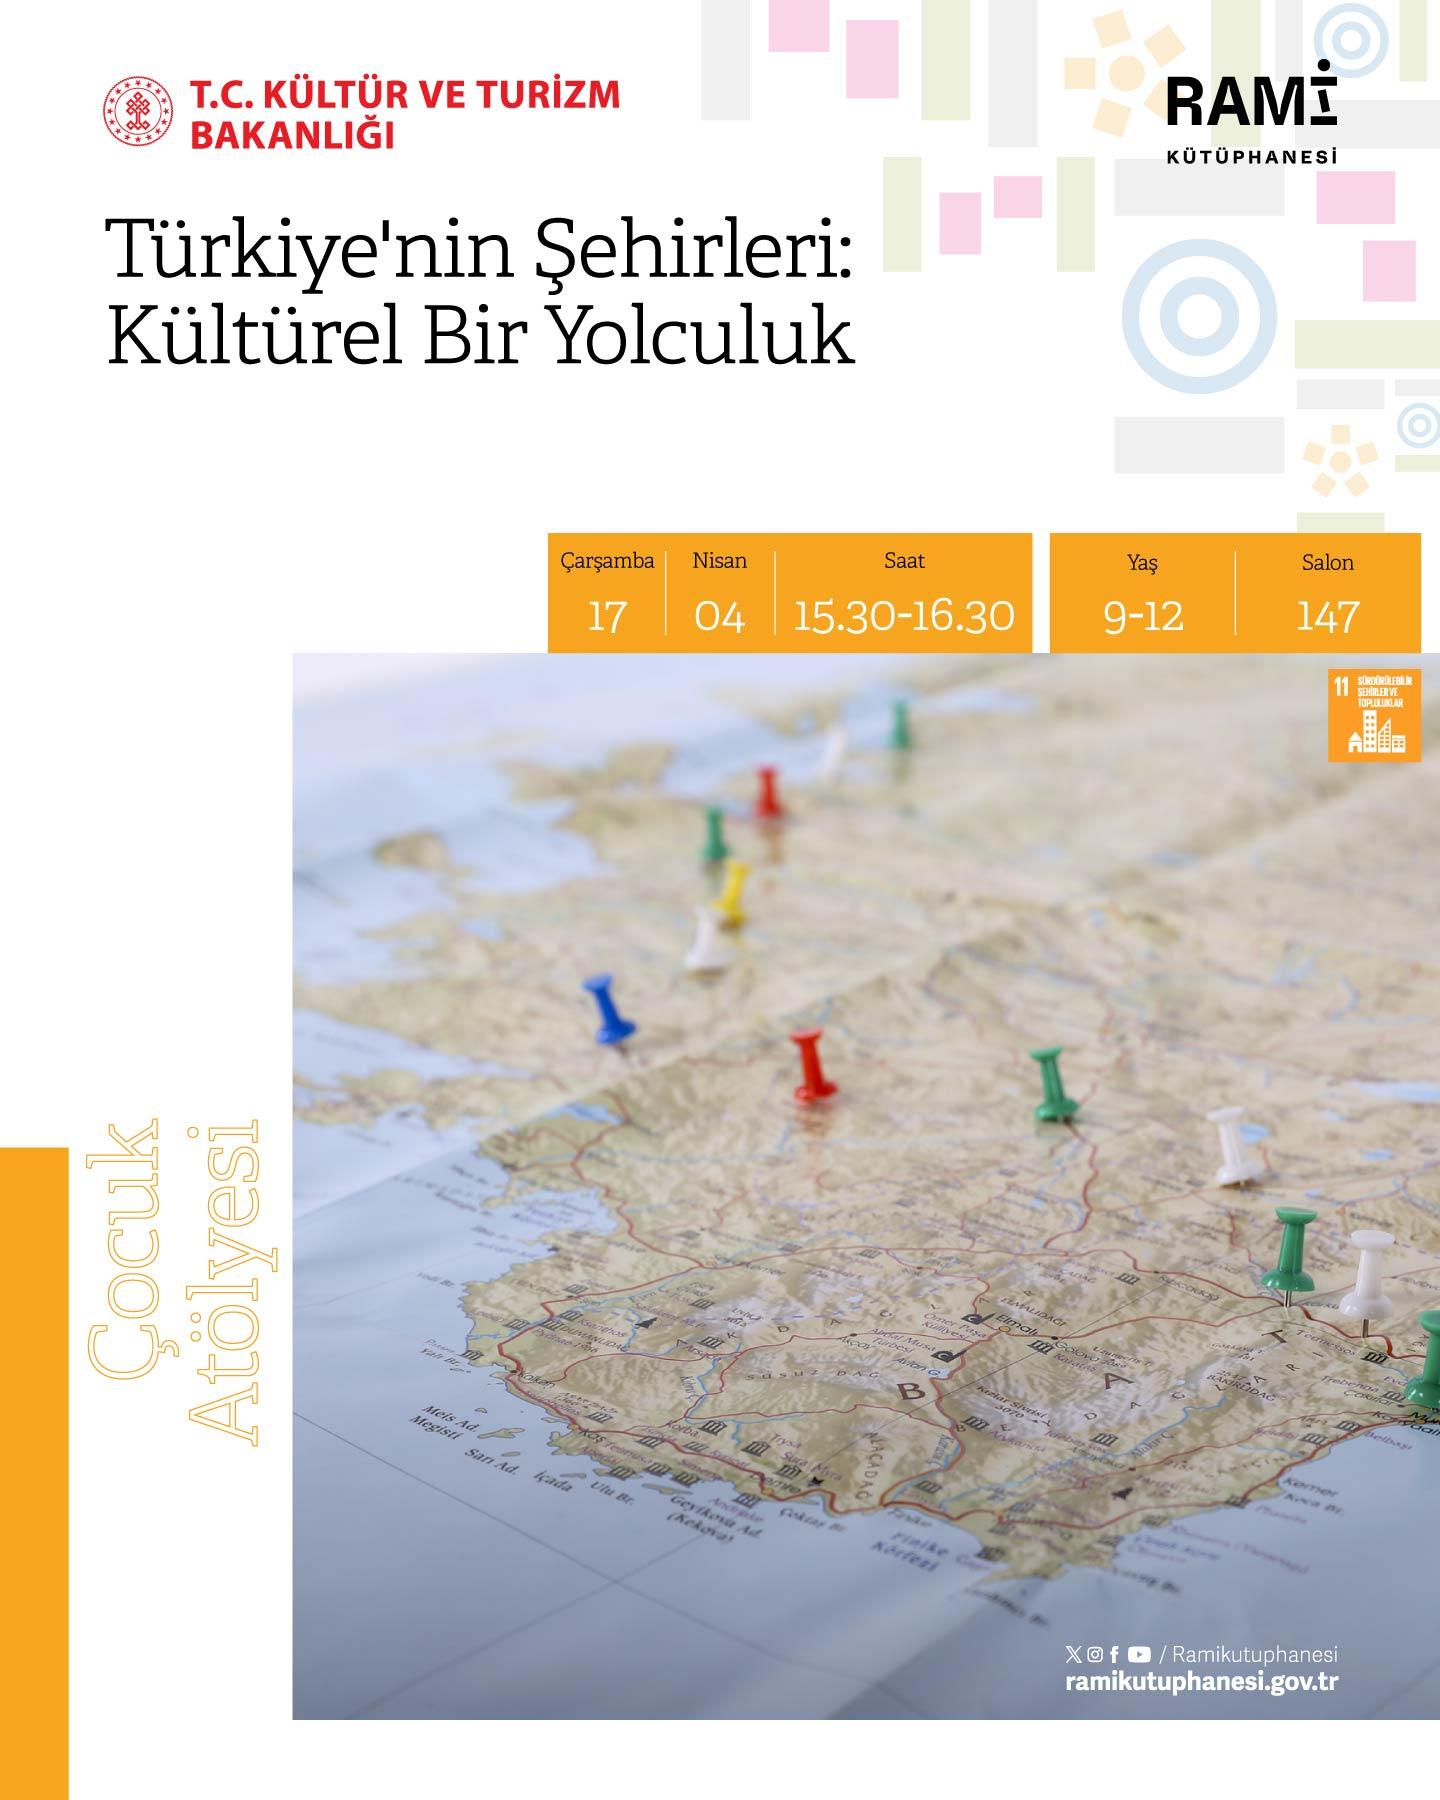 Türkiye'nin Şehirleri: Kültürel Bir Yolculuk